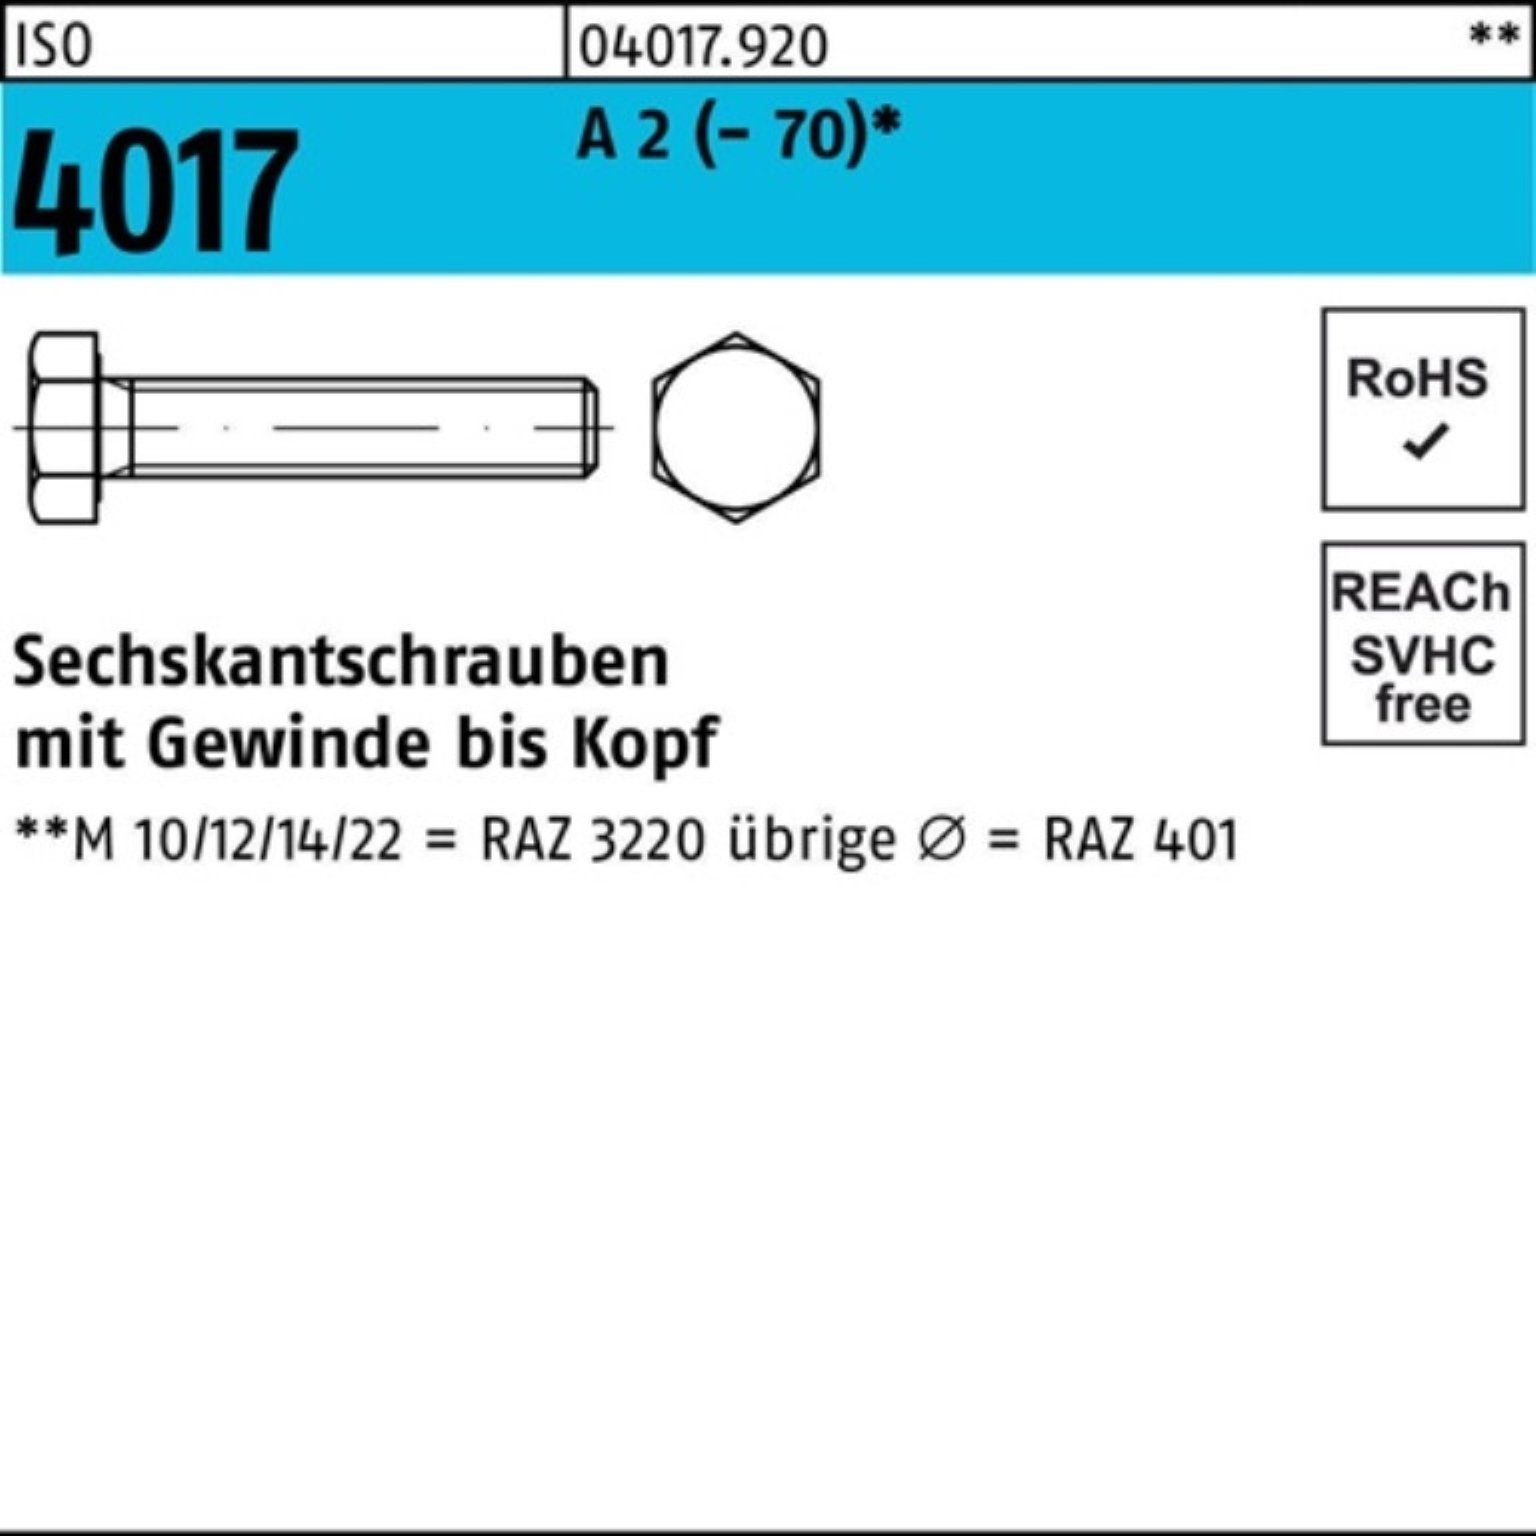 Bufab Sechskantschraube 2 Pack VG A (70) M24x Stück Sechskantschraube ISO 200 4017 1 100er